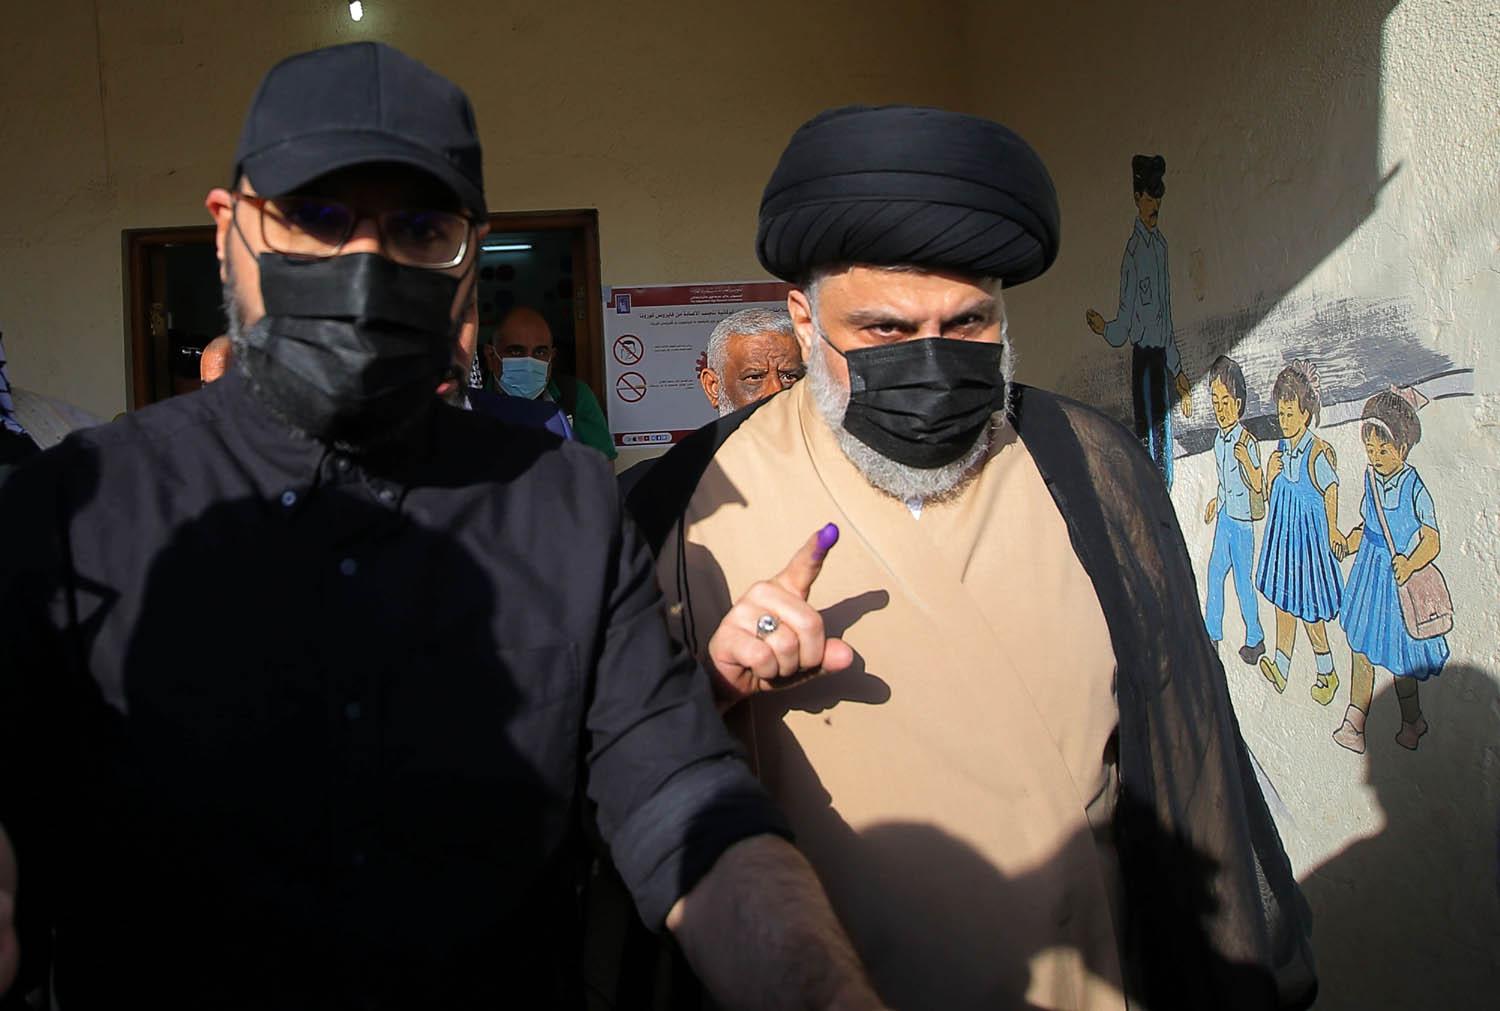 صورة بعد فوزه بالانتخابات التشريعية مقتدي الصدر يبتعد عن ايران ويطالب بحماية السيادة العراقية